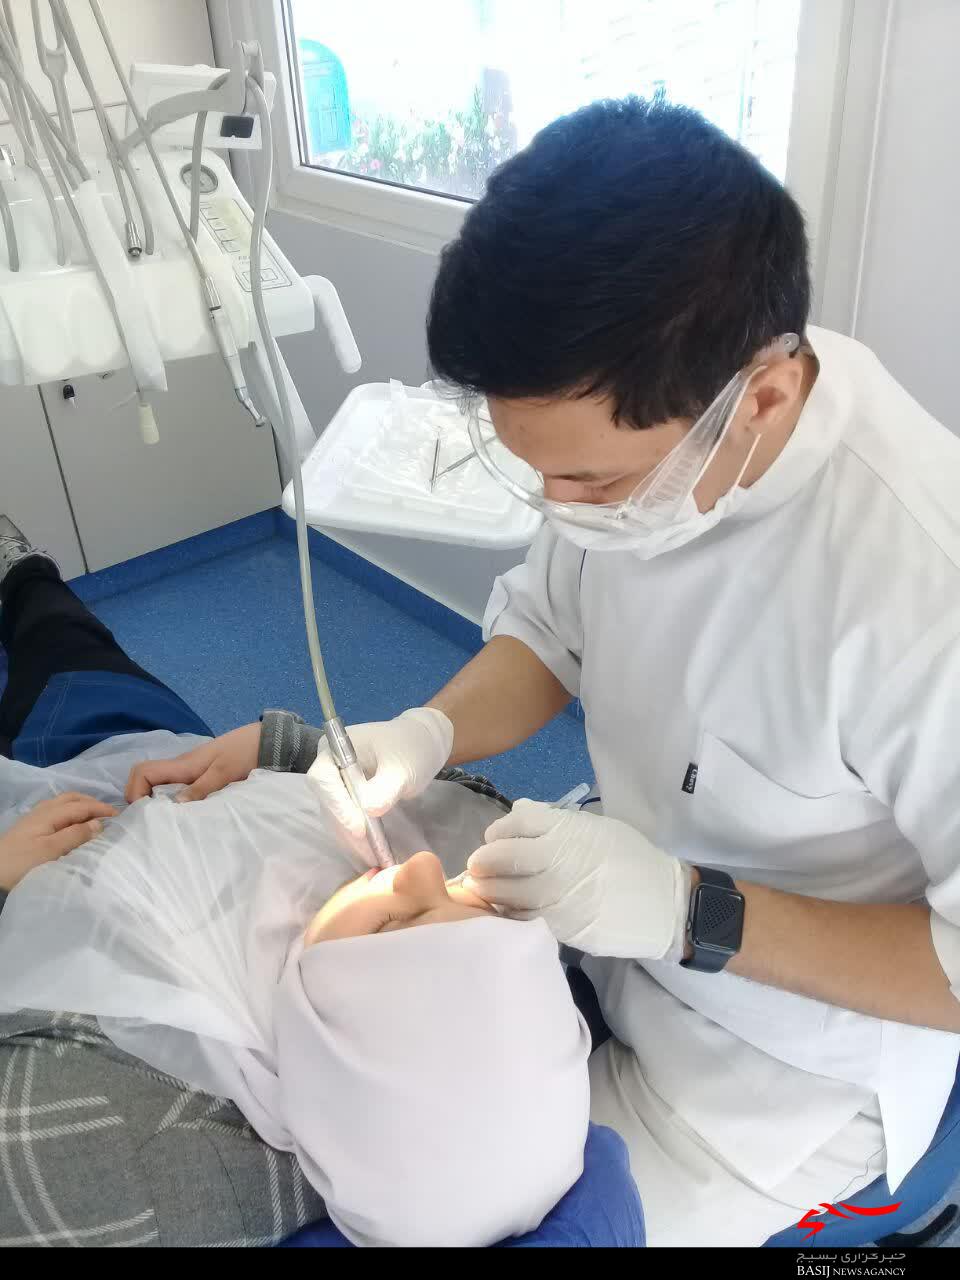 ارائه خدمات رایگان دندانپزشکی در منطقه مهرشهر کرج